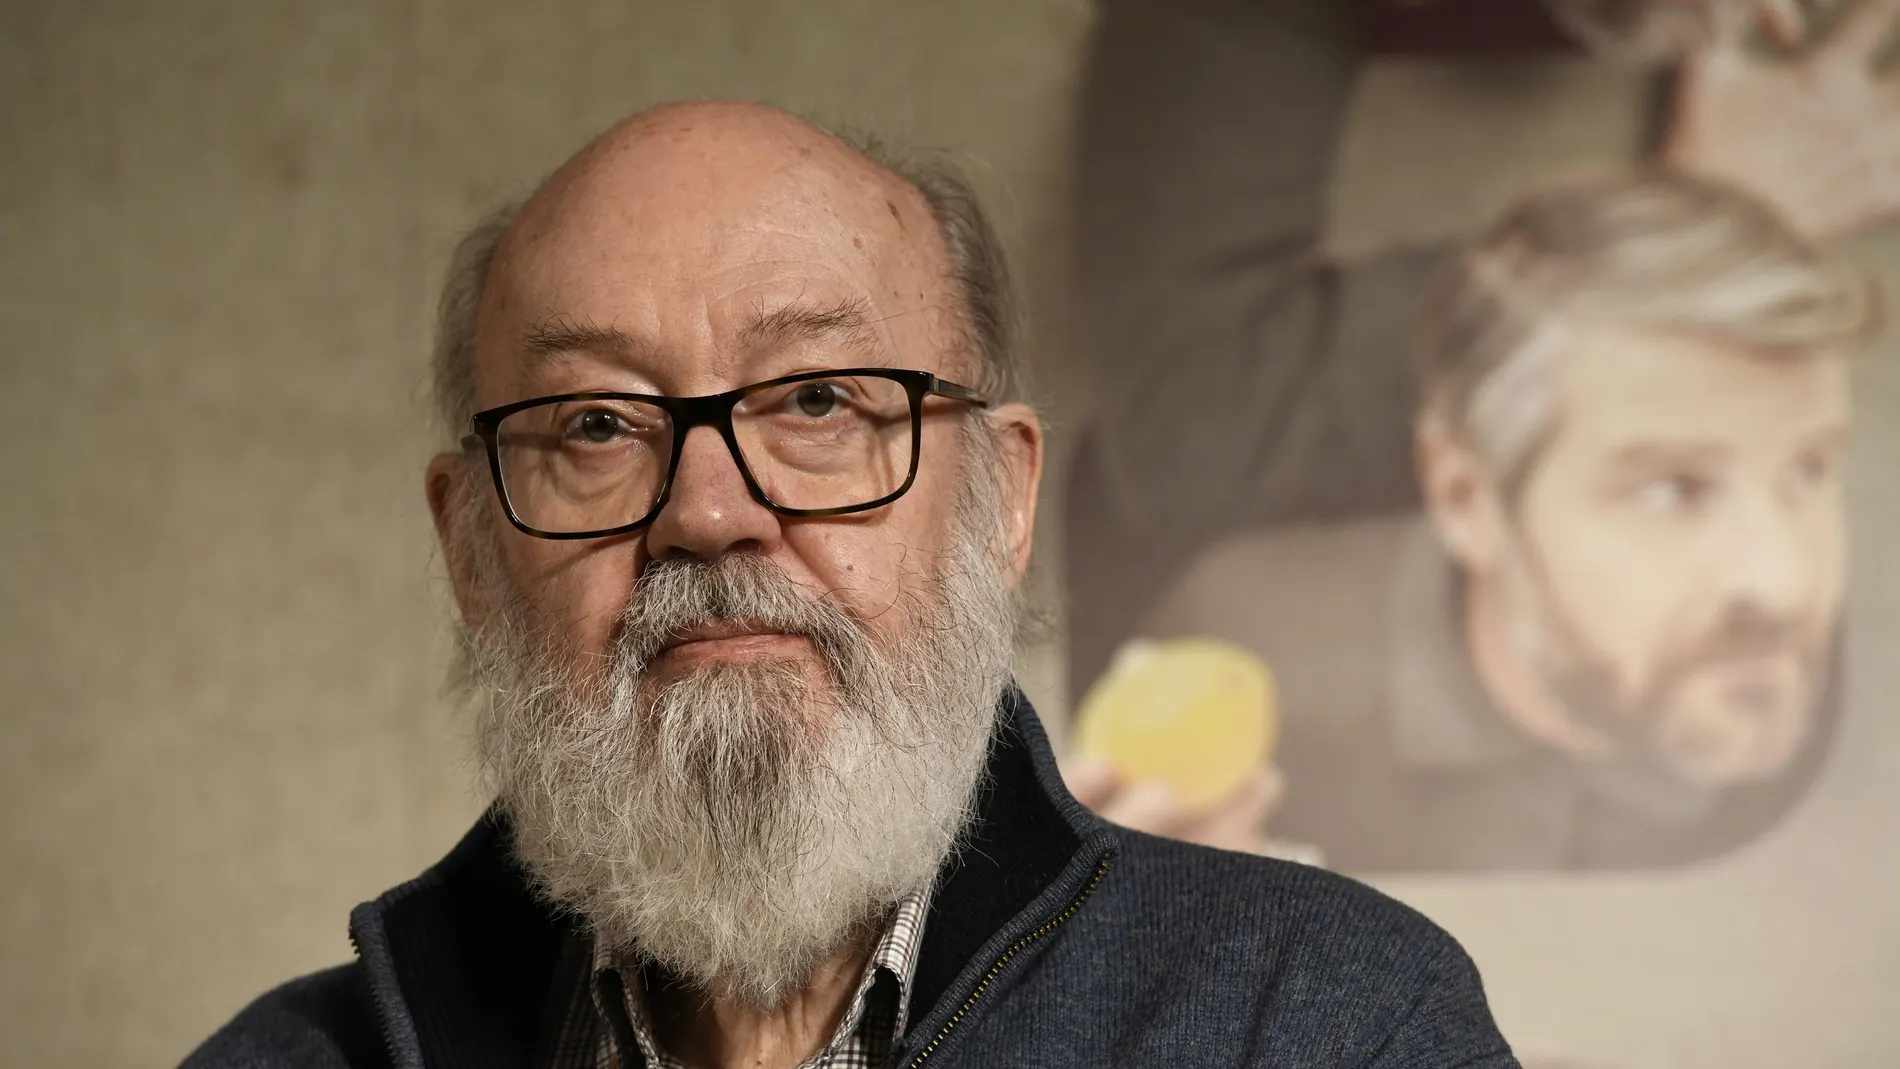 Imagen del cineasta José Luis Cuerda, director, productor y guionista de cine ha fallecido hoy a los 72 años en su casa de Madrid.